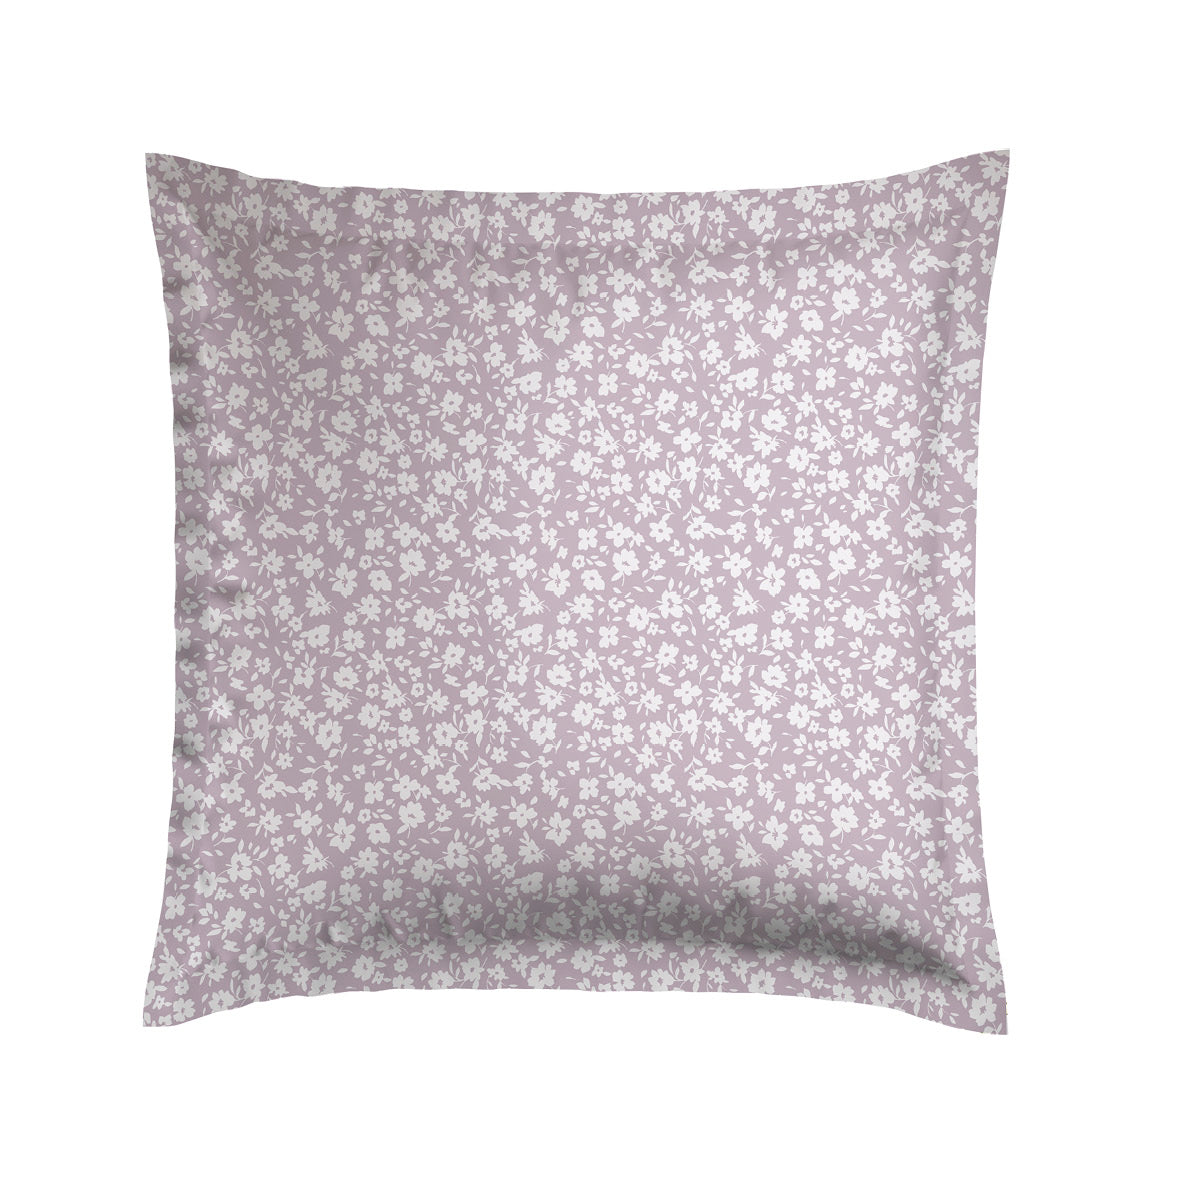 Pillowcase(s) cotton satin - Les Yeux de Suzanne Lavender